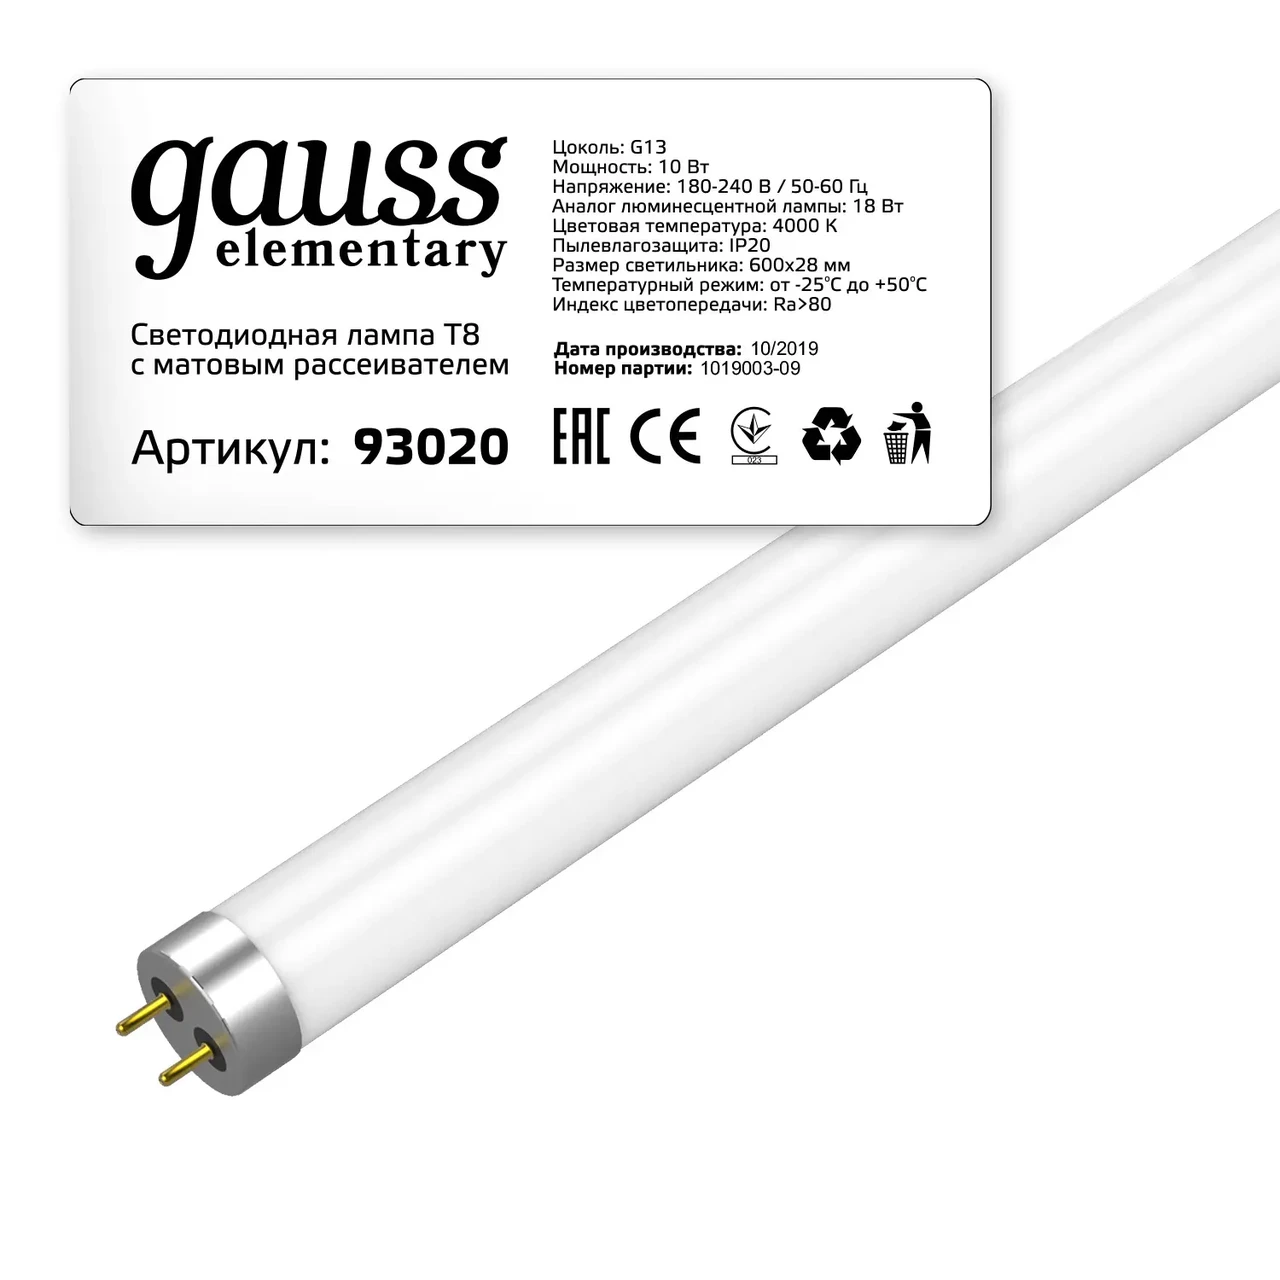 Лампа Gauss Elementary T8 10W 780lm 4000K G13 600mm стекло LED 1/30, фото 1